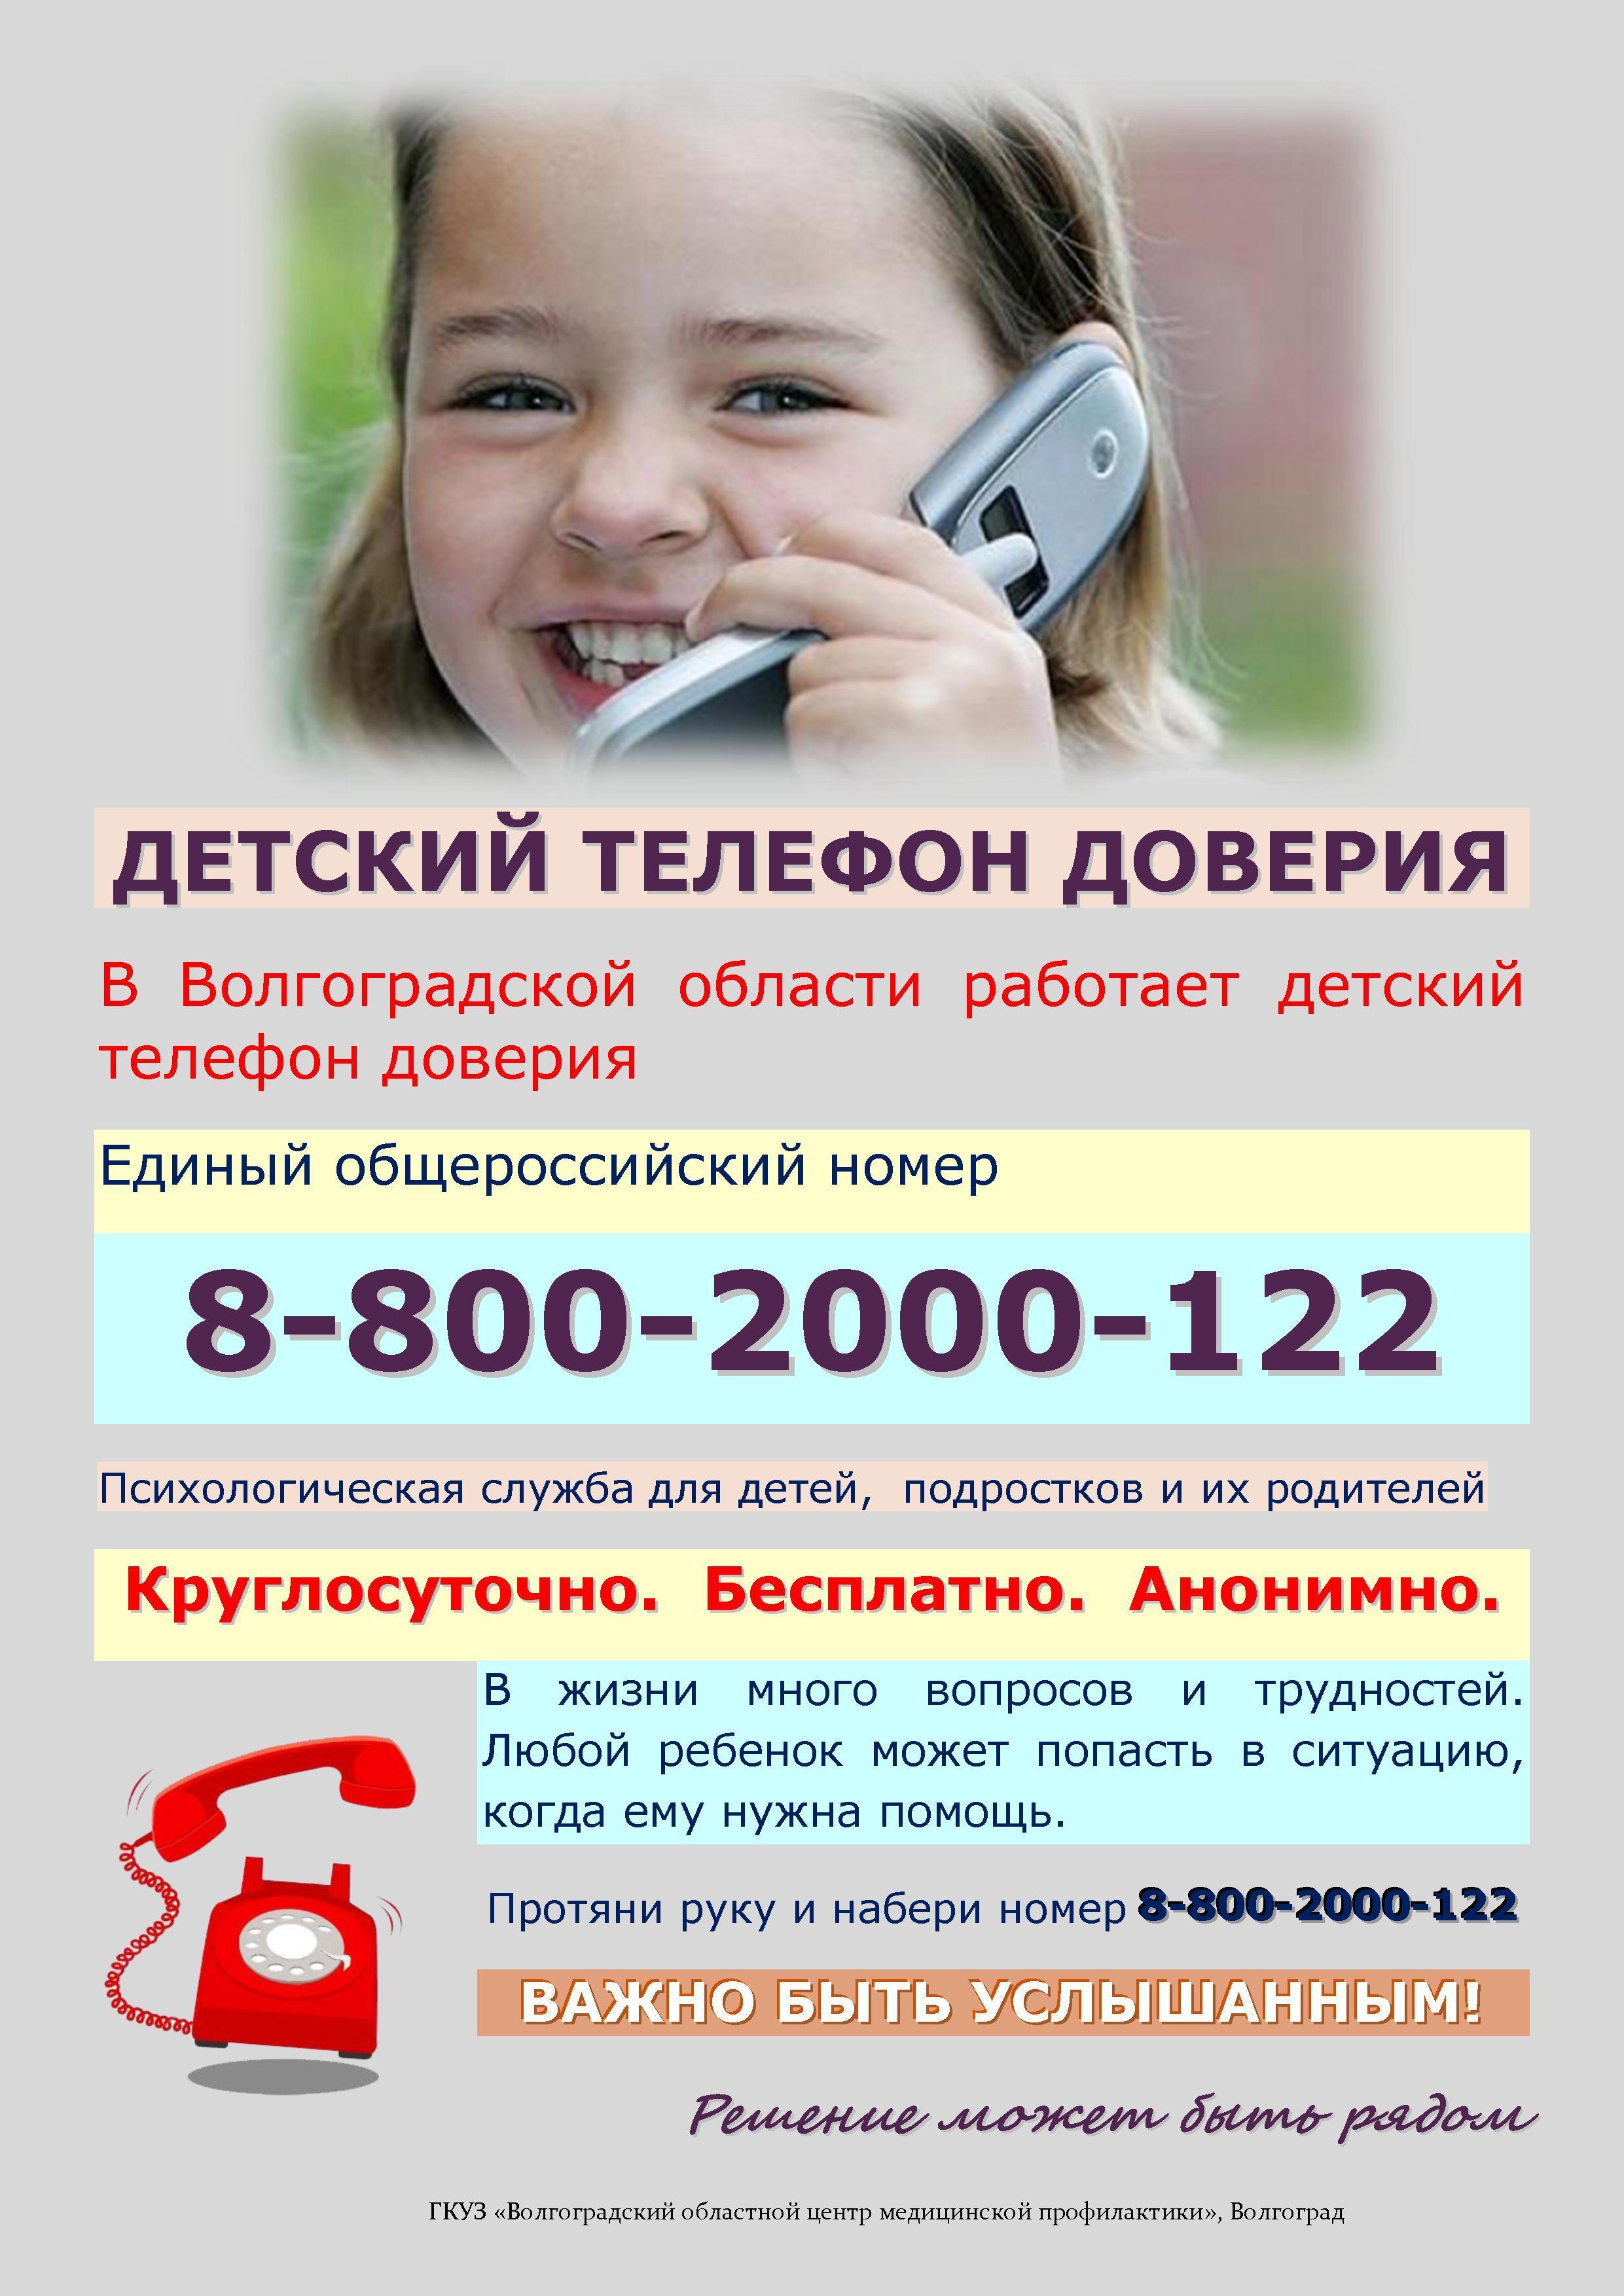 Консультант телефона доверия. Телефон доверия. Детский телефон доверия. Телефон доверия для детей подростков и их родителей. Номер телефона доверия для детей.